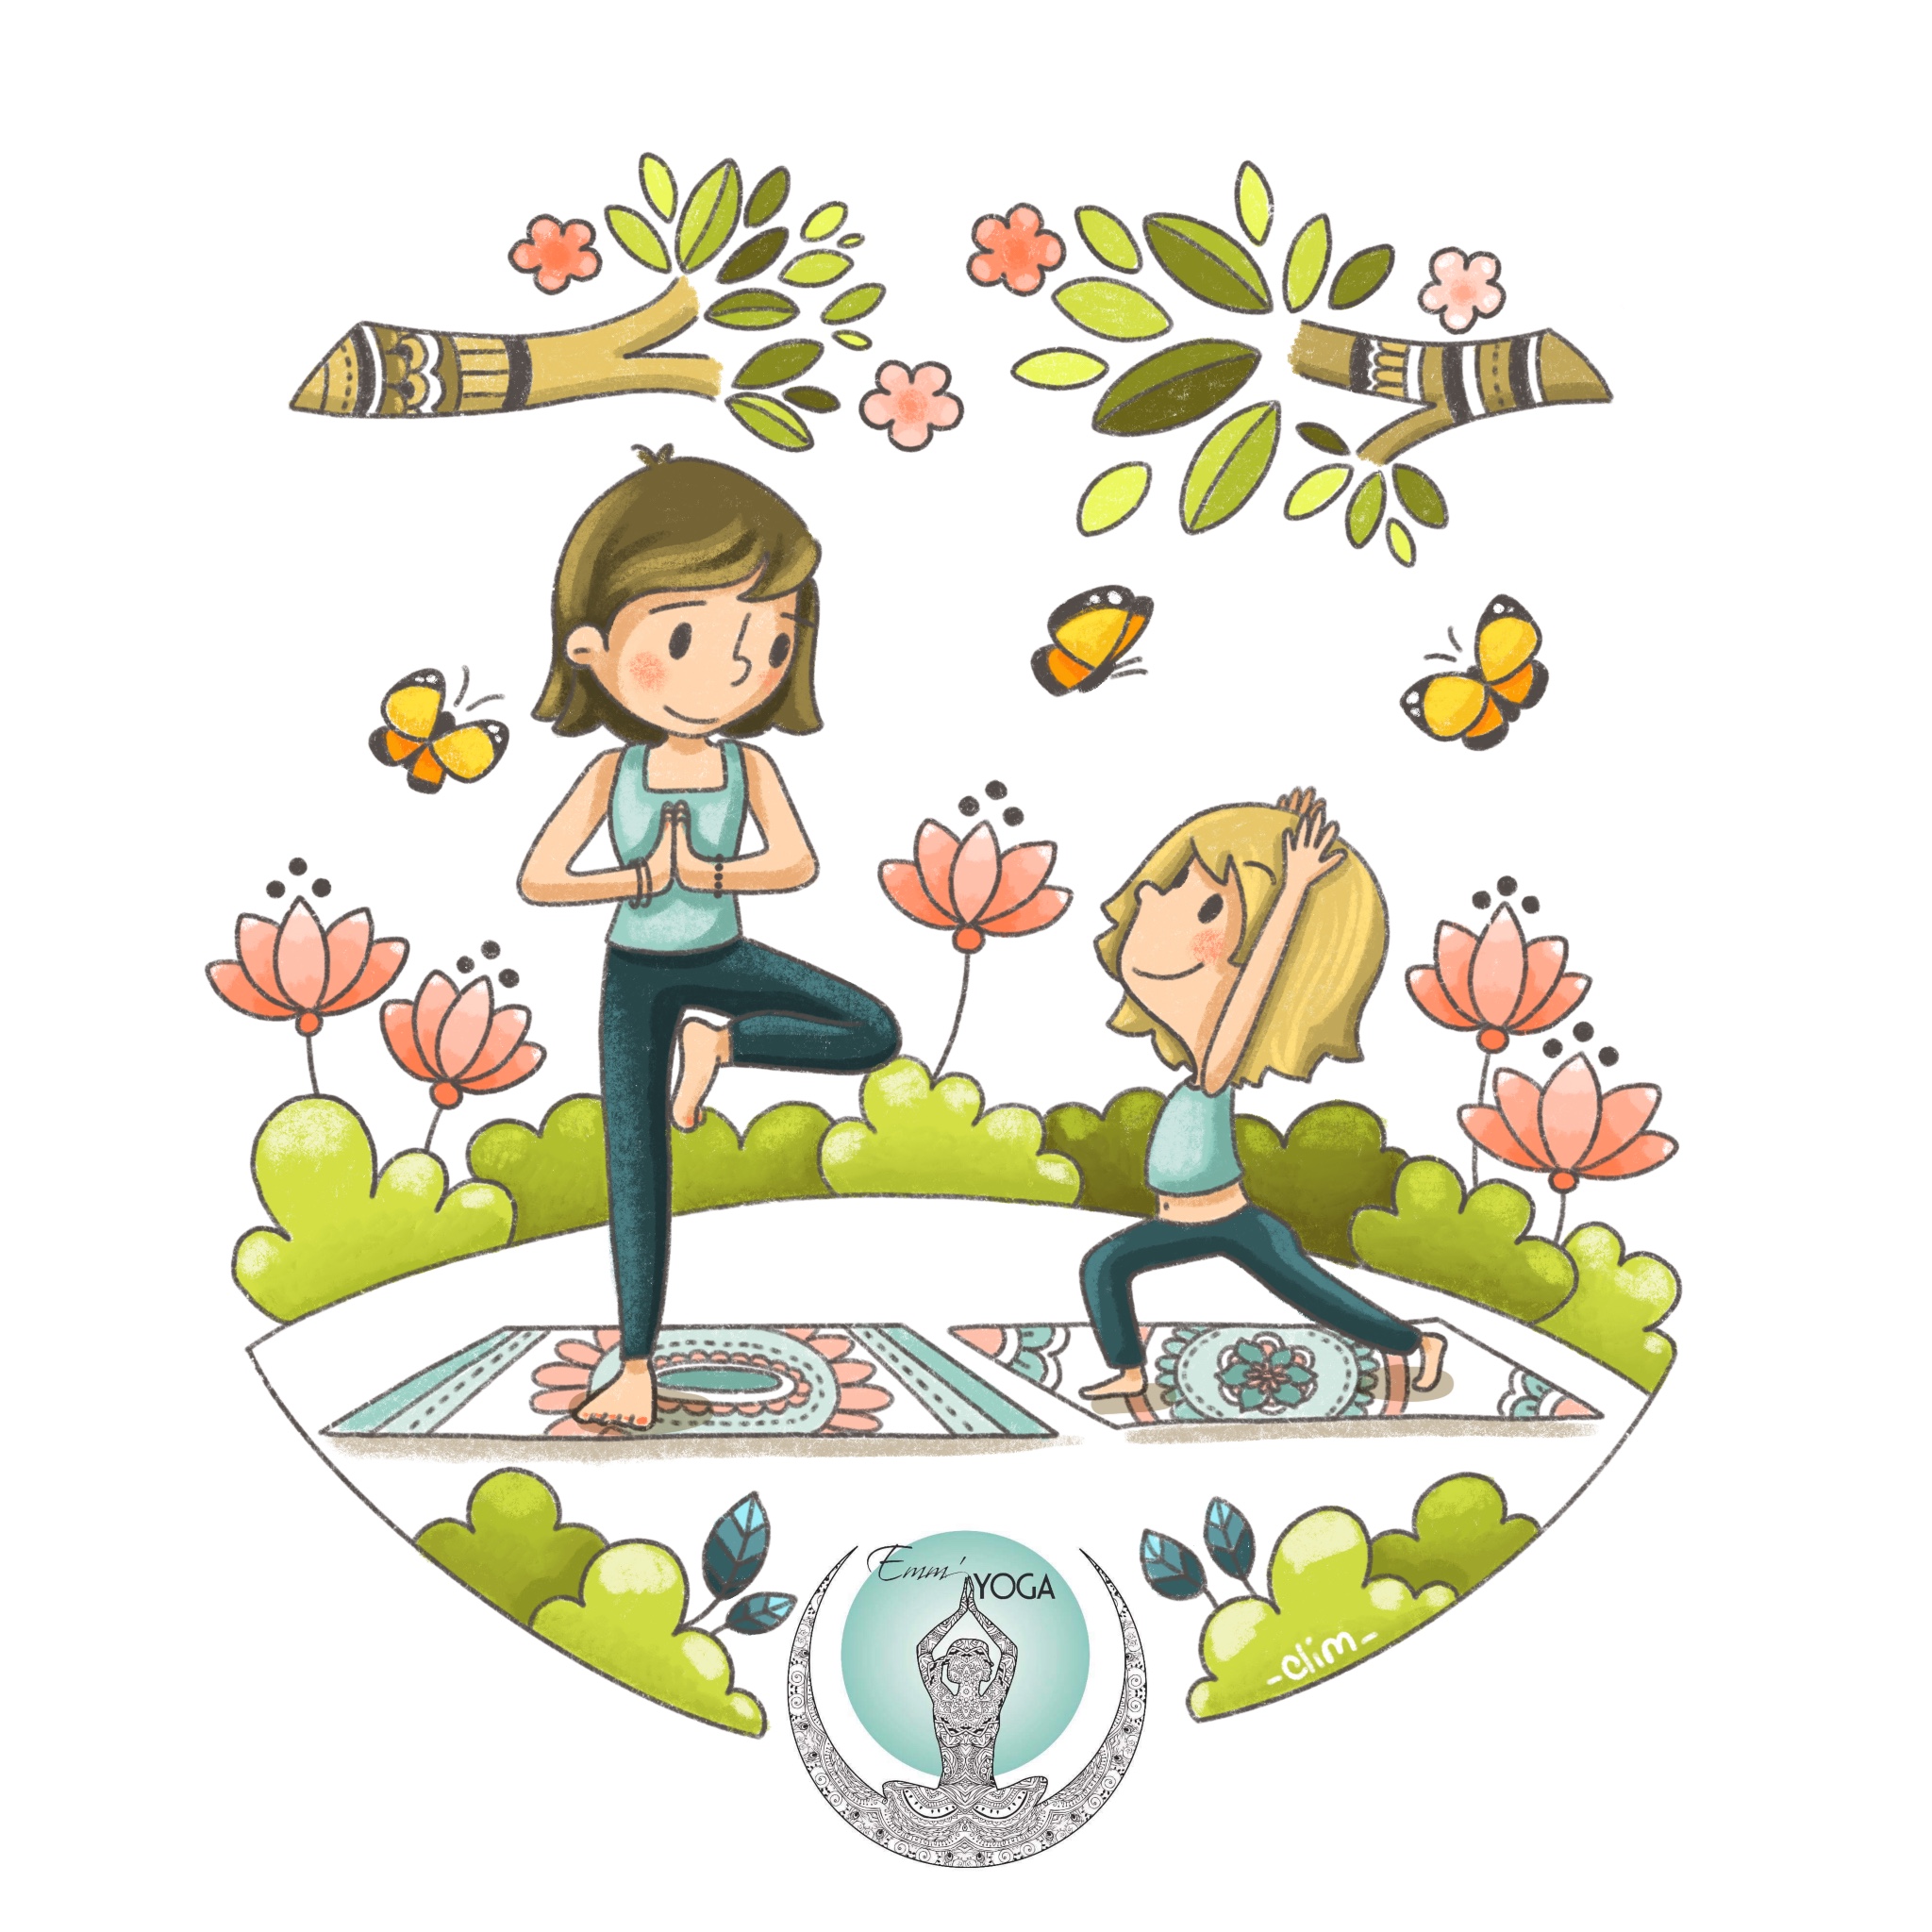 Illustration digitale pour invitation à un cours de yoga parent-enfant - studio Emm'Yoga - 2020